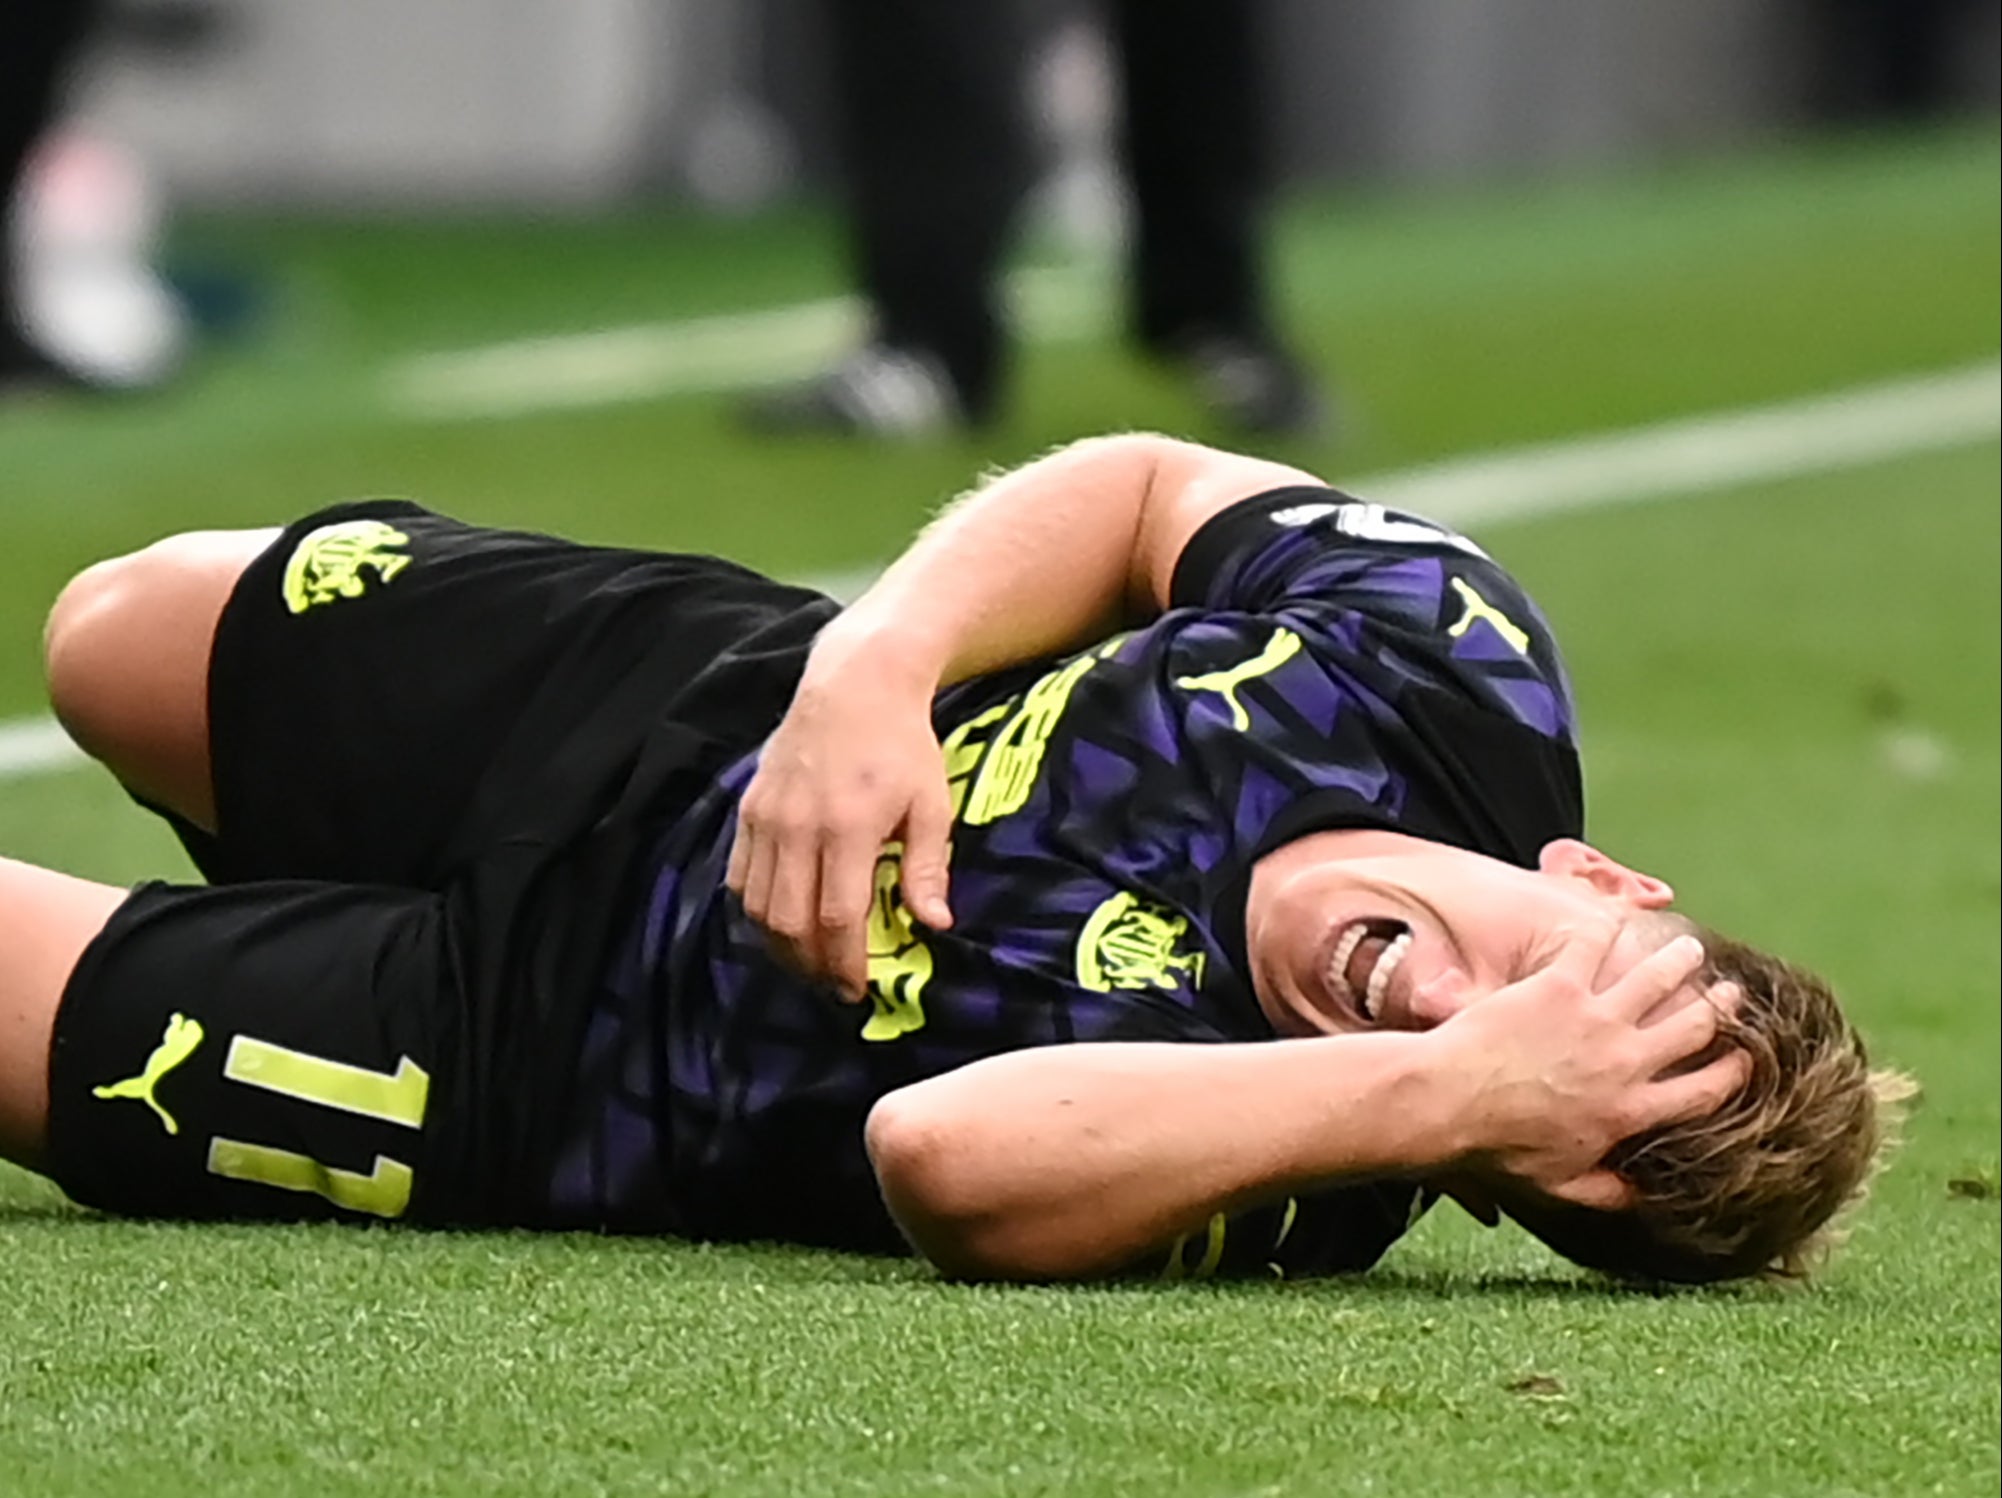 Newcastle midfielder Matt Ritchie was injured against Tottenham